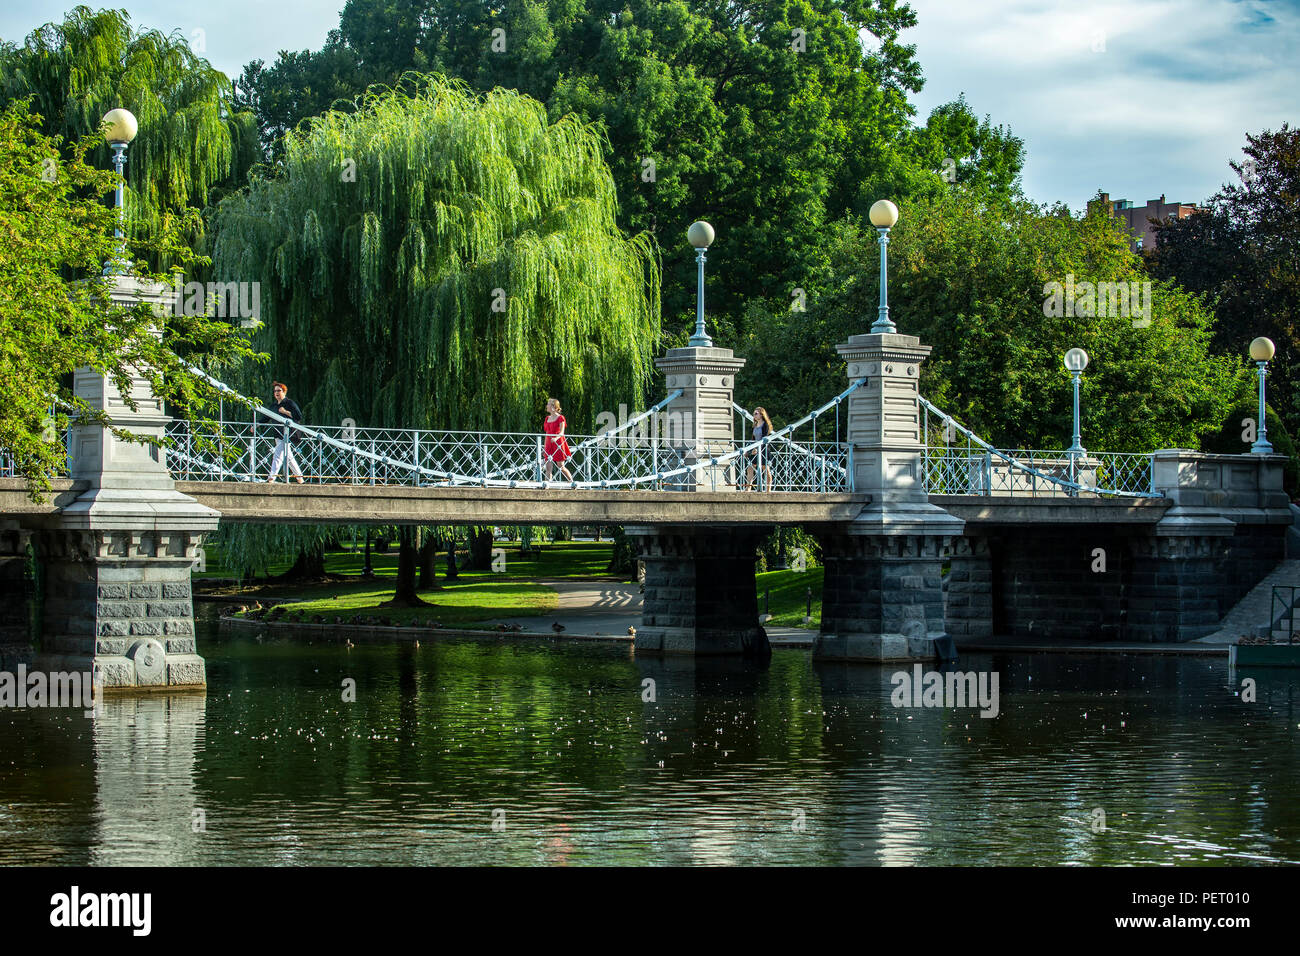 Persone attraversando ponte sul laghetto, giardino pubblico, Boston, Massachusetts, STATI UNITI D'AMERICA Foto Stock